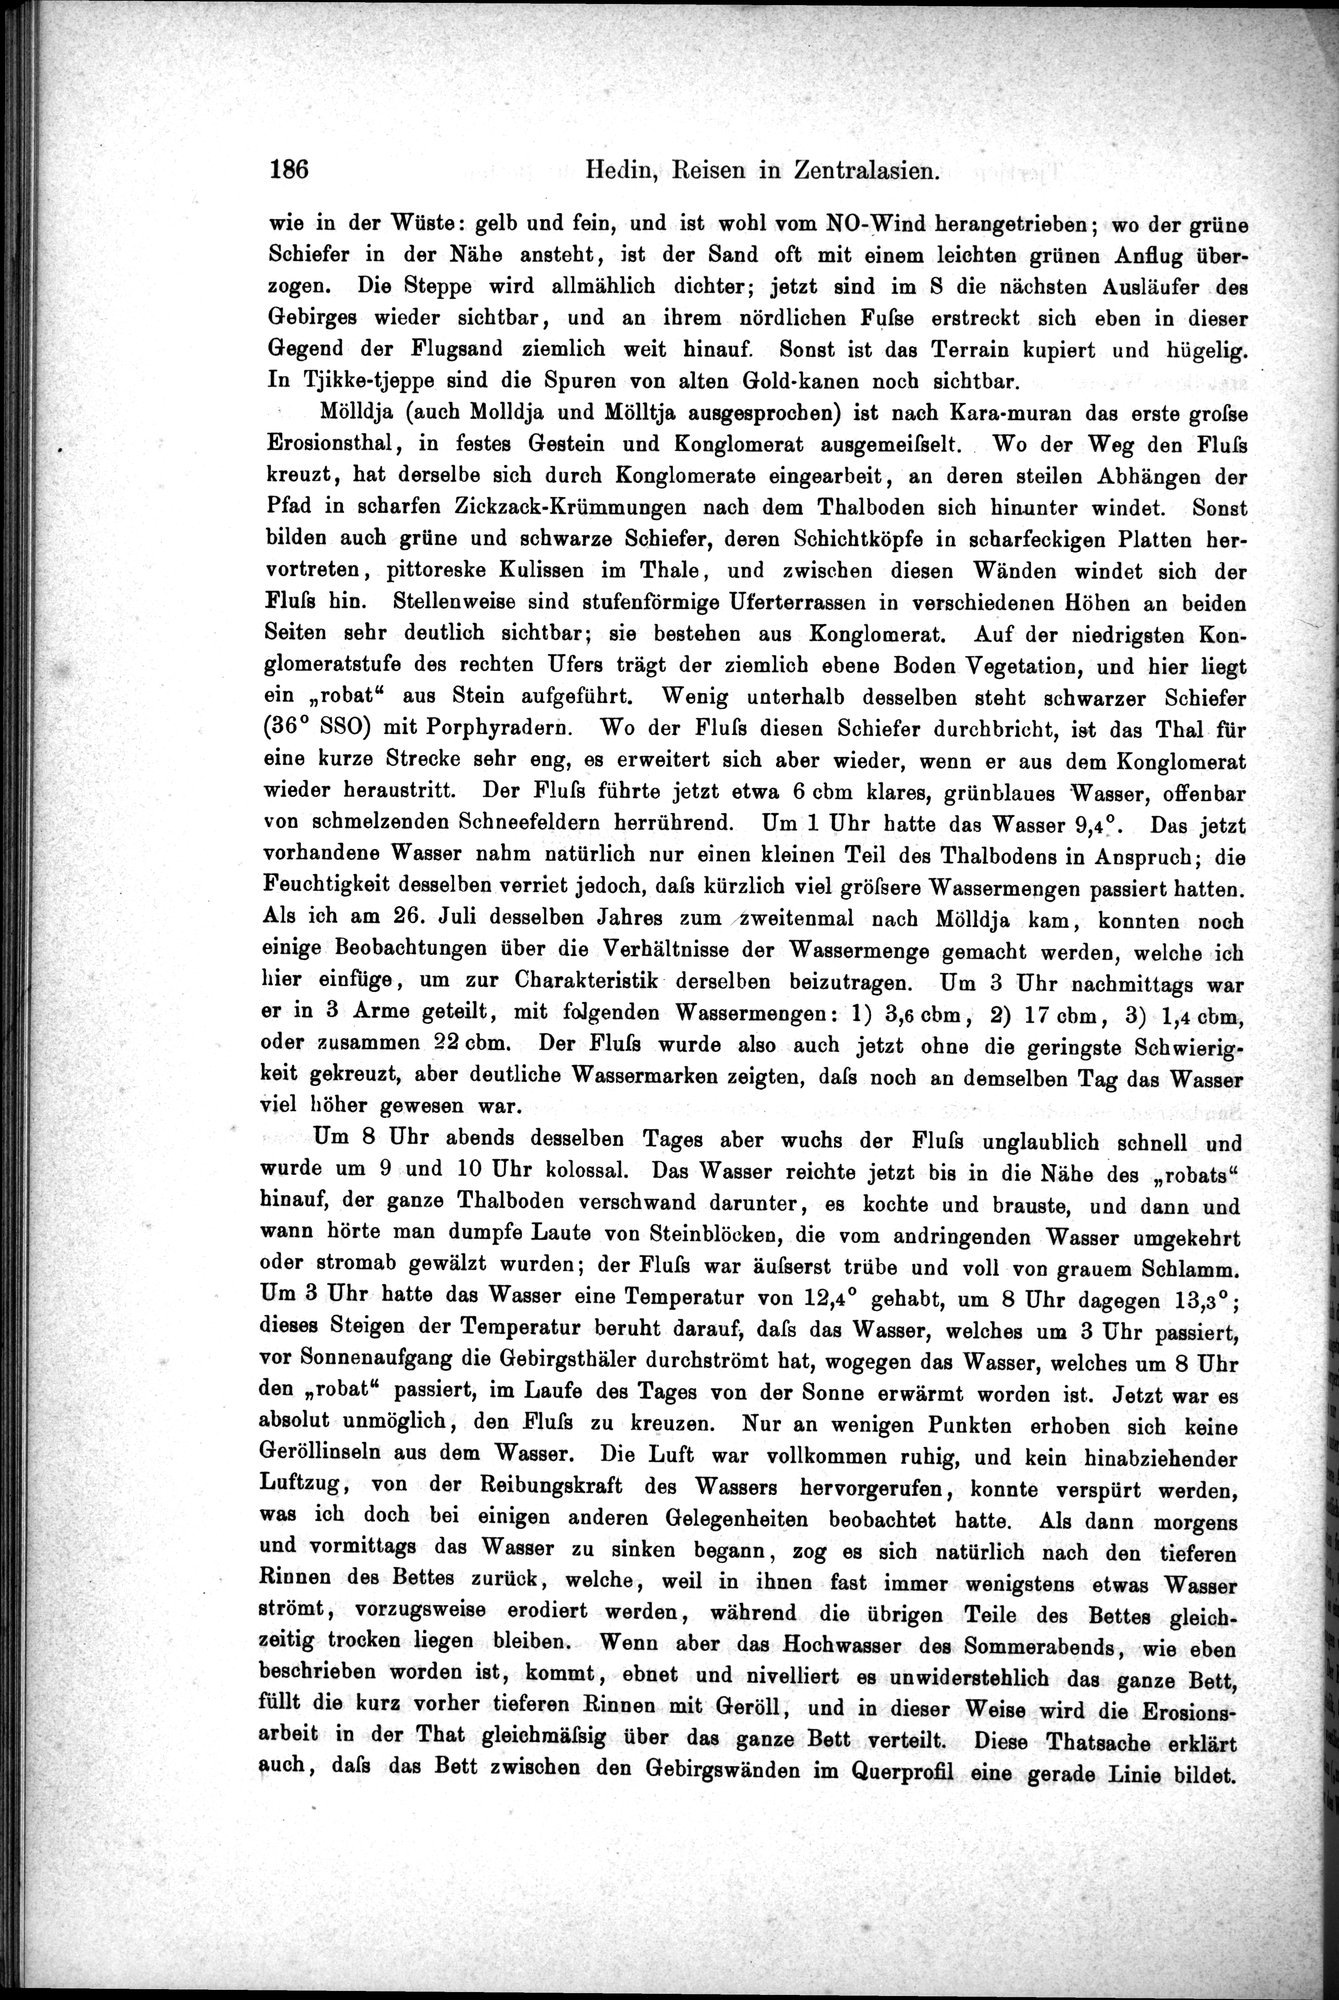 Die Geographische-Wissenschaftlichen Ergebnisse meiner Reisen in Zentralasien, 1894-1897 : vol.1 / Page 198 (Grayscale High Resolution Image)